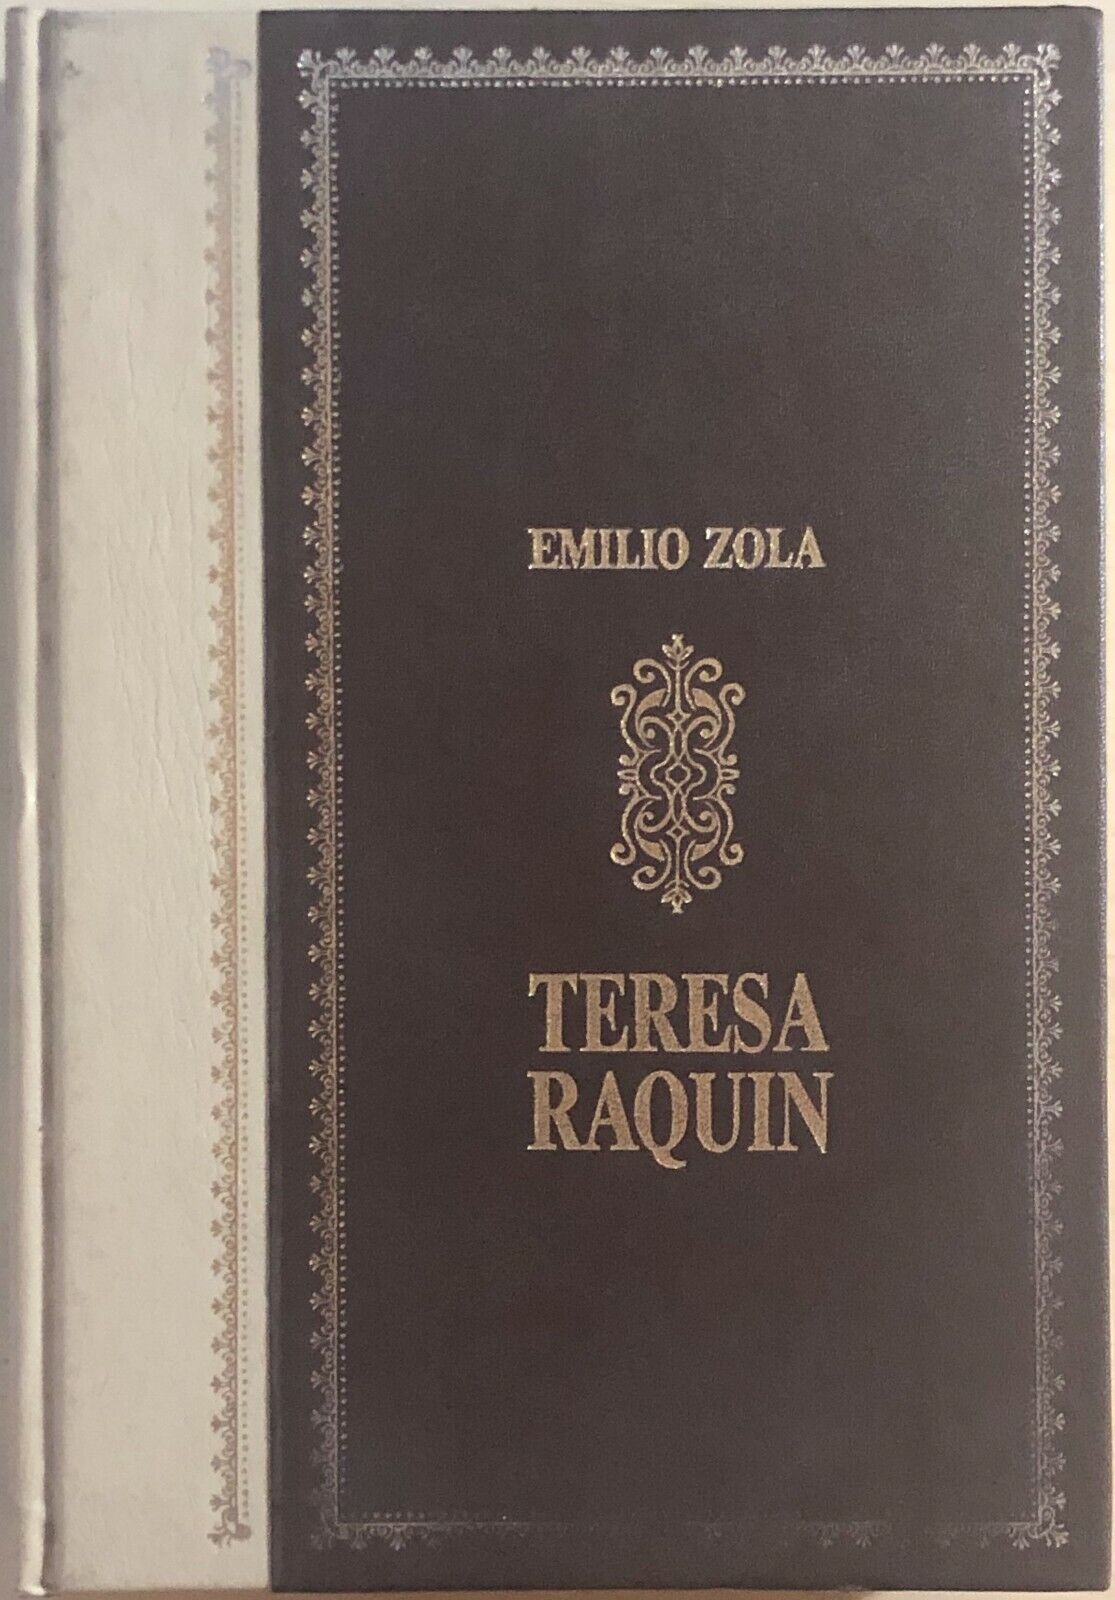 Teresa Raquin di Emilio Zola, 1985, Alberto Peruzzo Editore